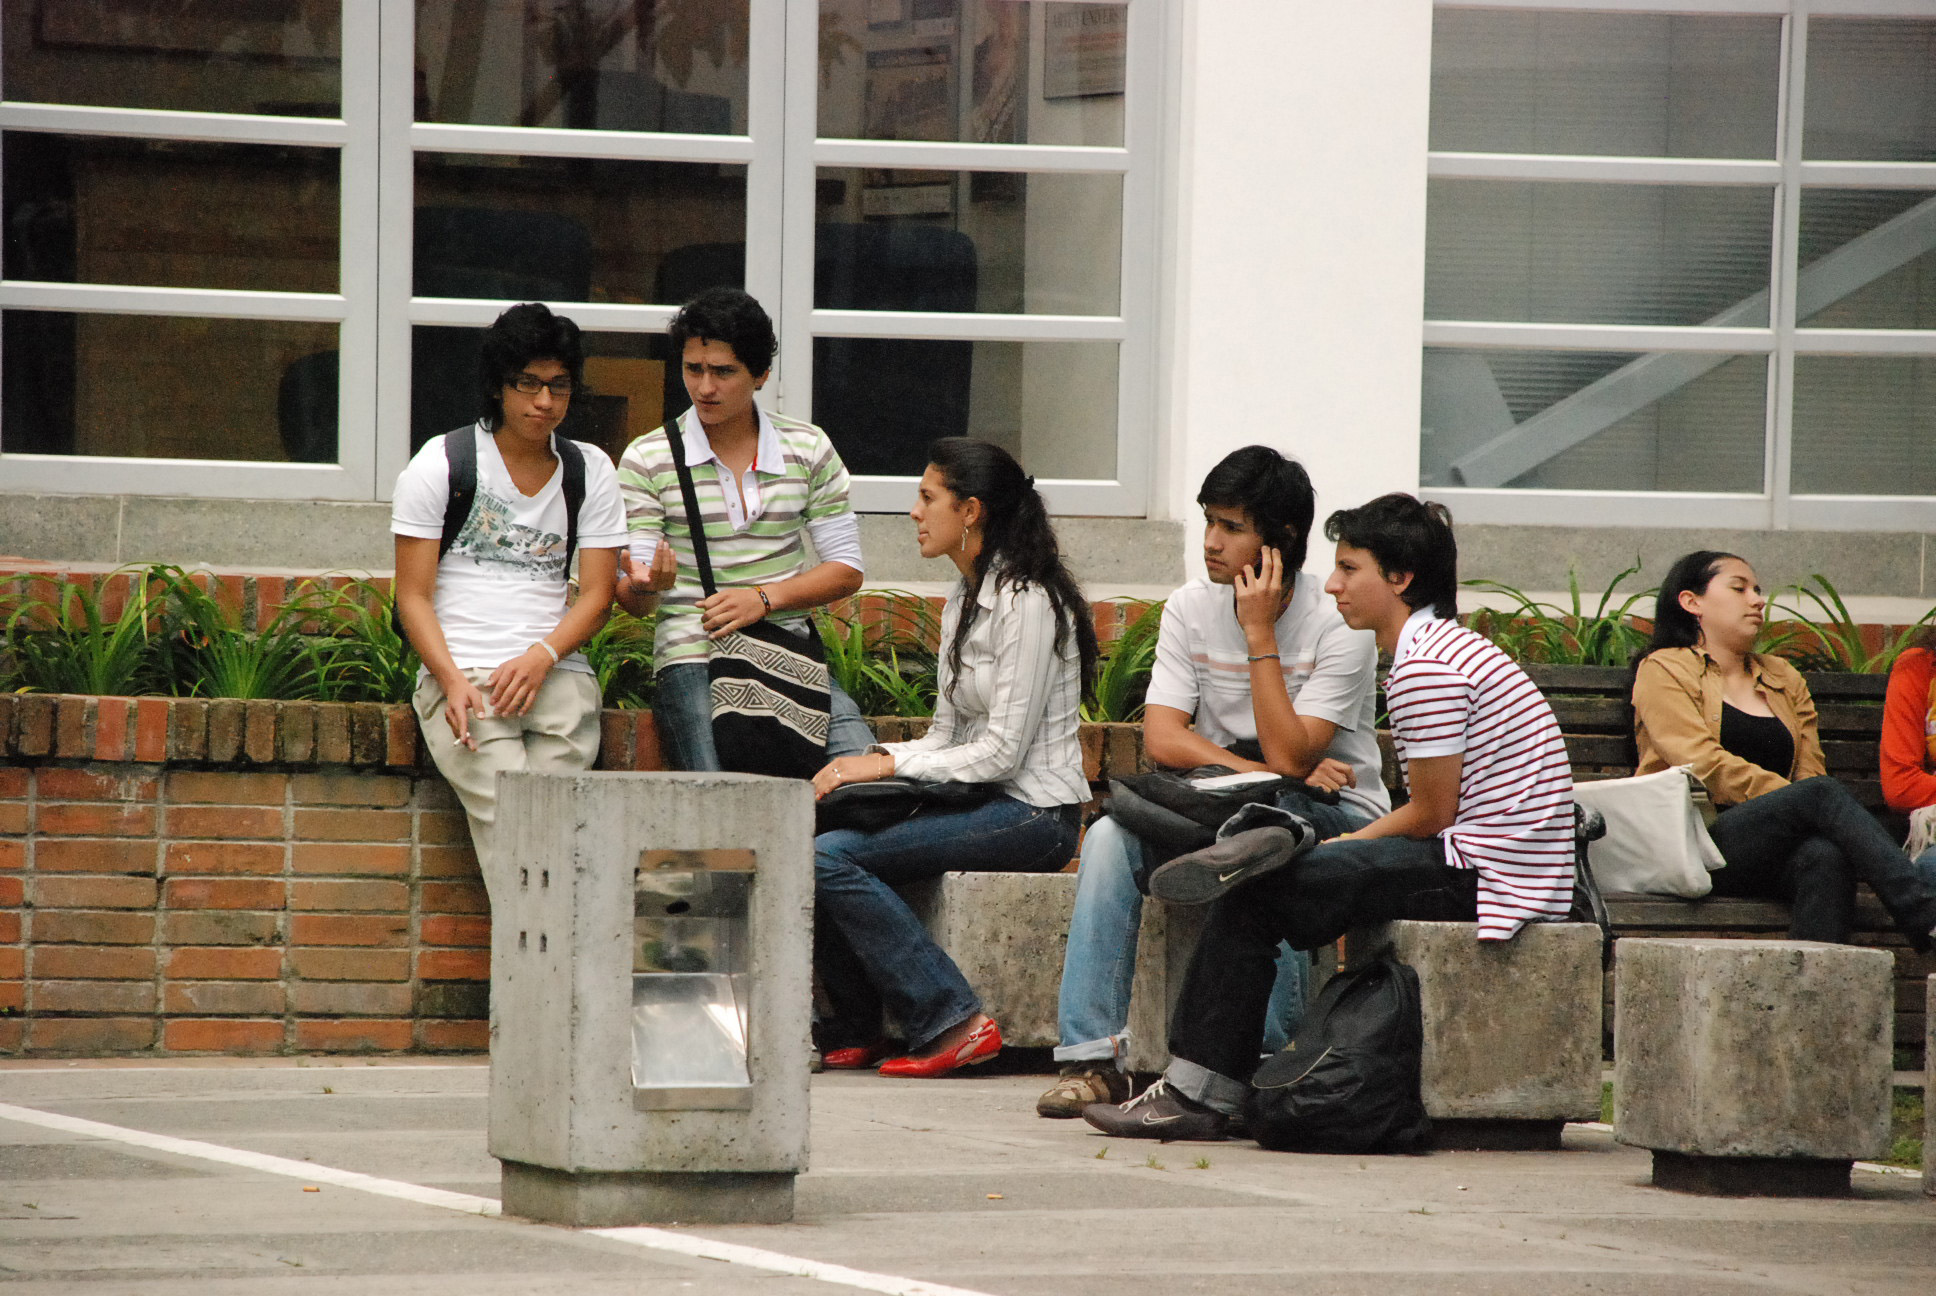 Múltiples factores están asociados a la deserción de los estudiantes en las universidades. Fotos: Andrés Almeida